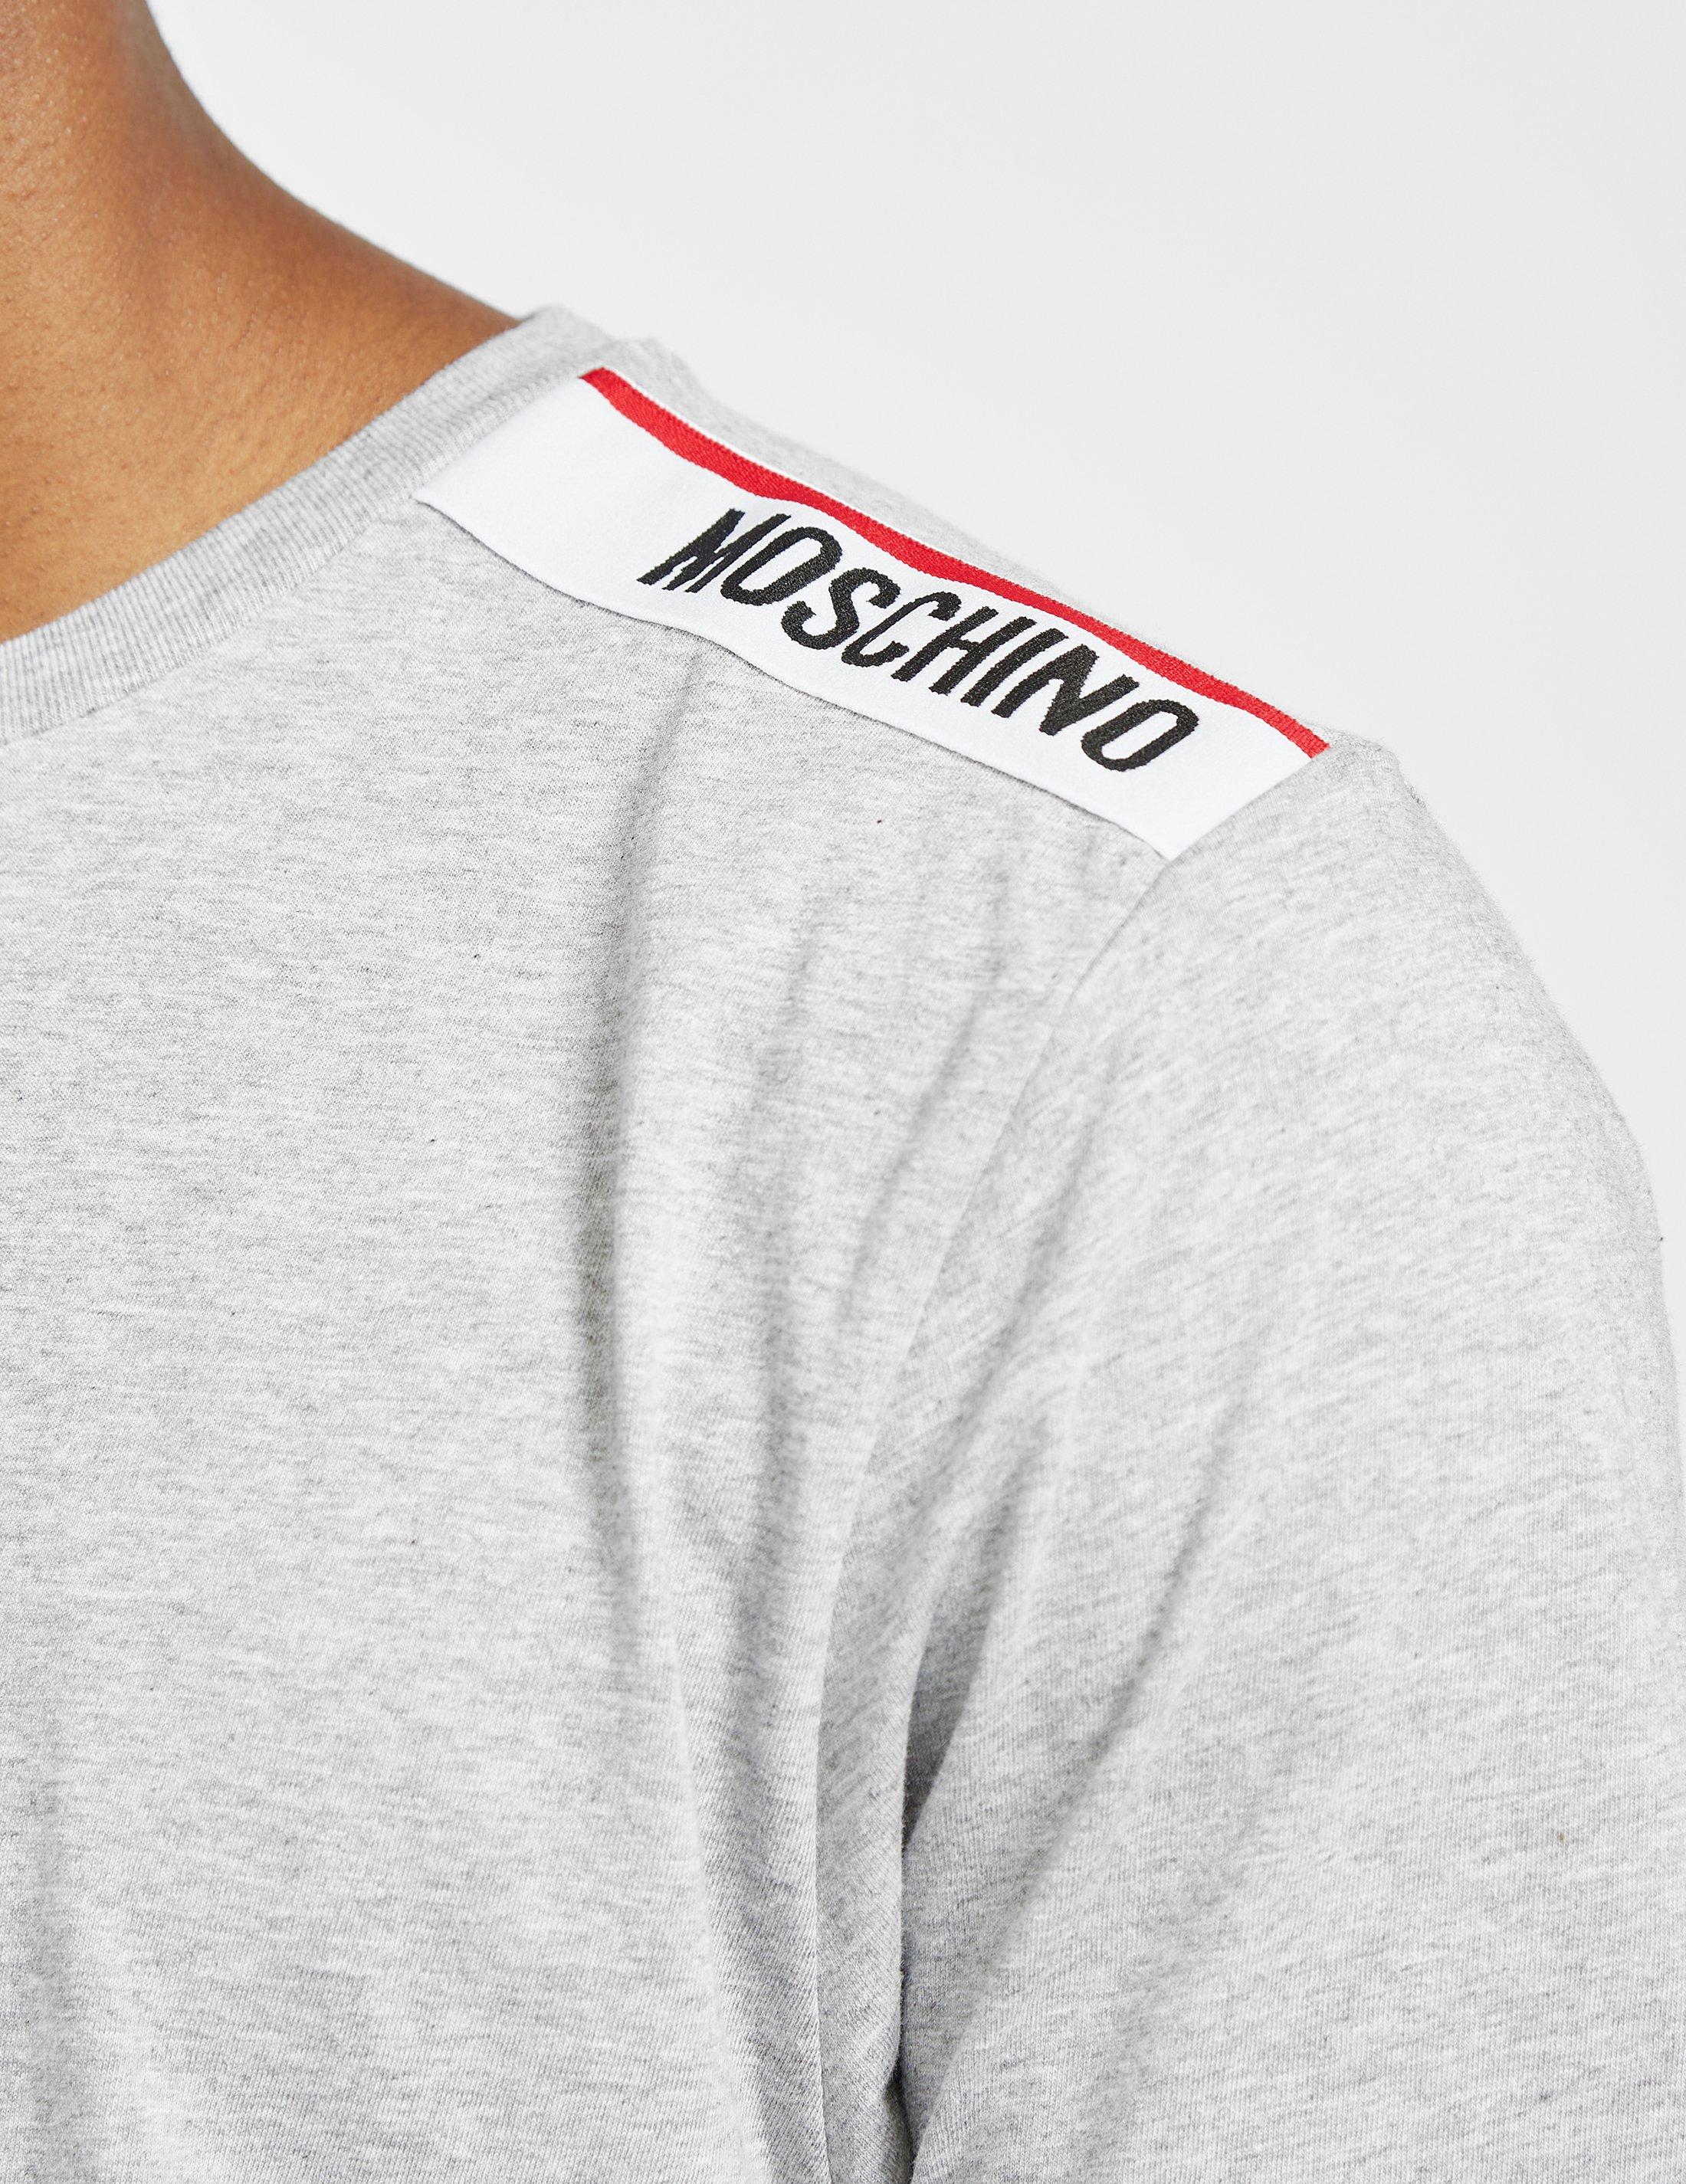 moschino tape logo t shirt